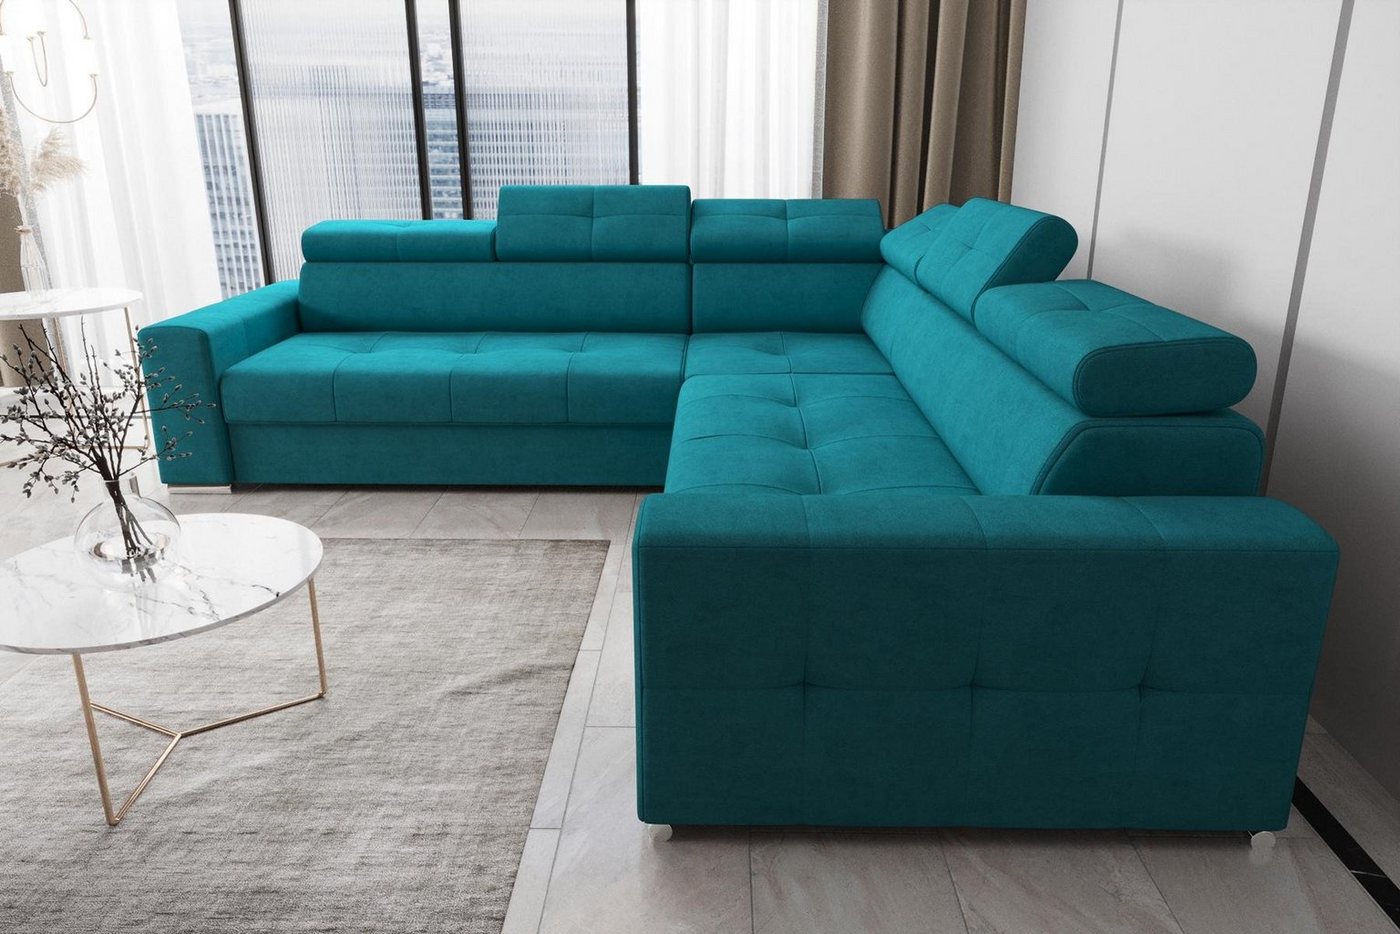 JVmoebel Ecksofa Wohnzimmer Textil Leder Luxus L Form Modern Ecksofa Couch, Made in Europe von JVmoebel